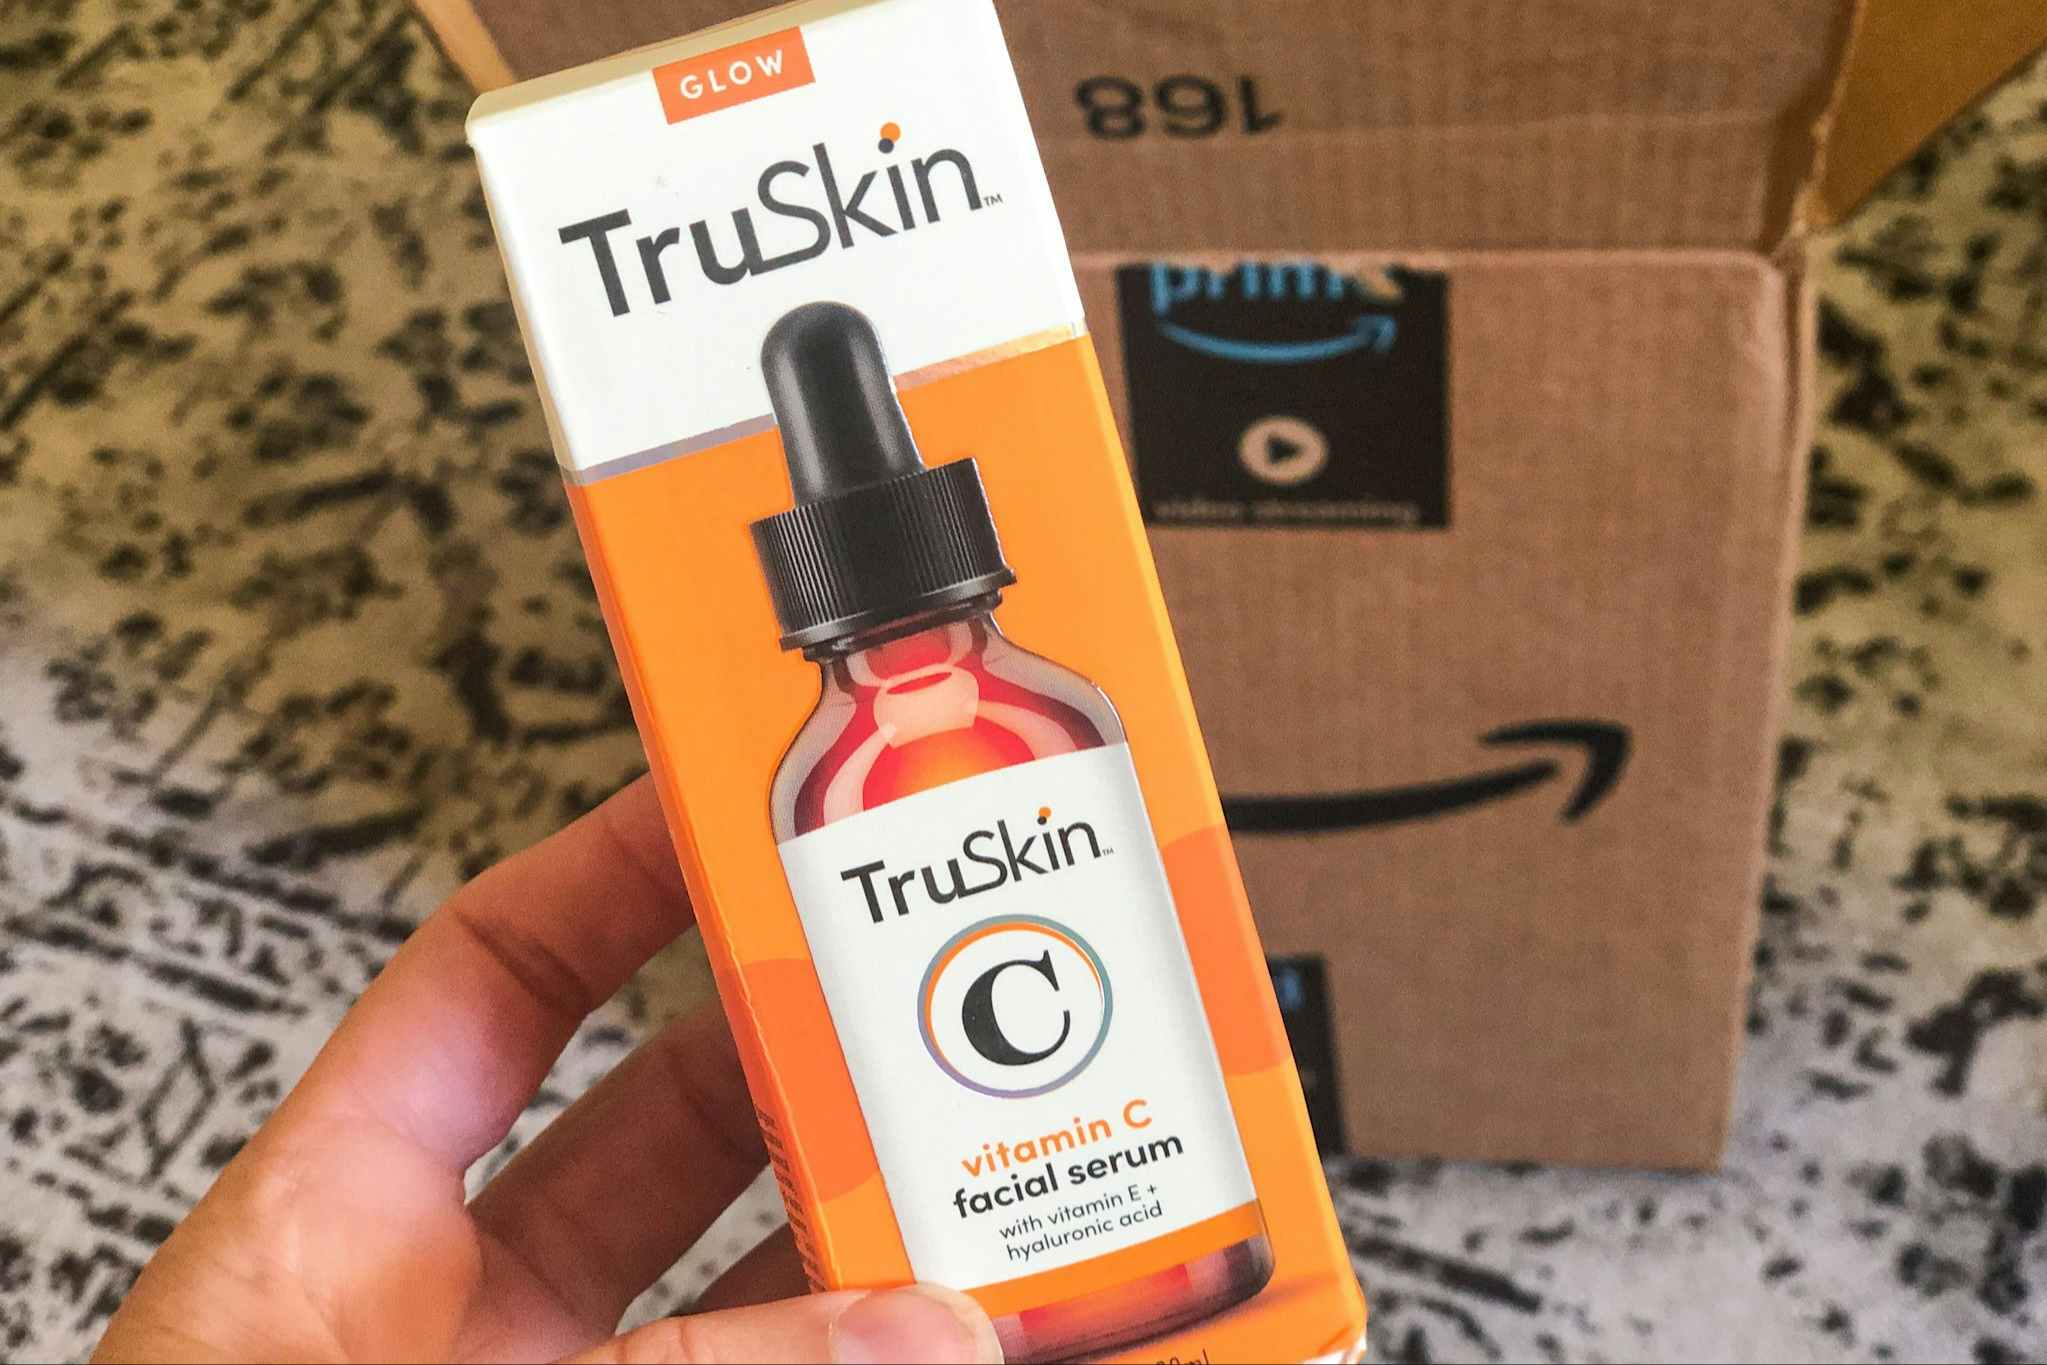 TruSkin Vitamin C Serum Drops to $12 on Amazon